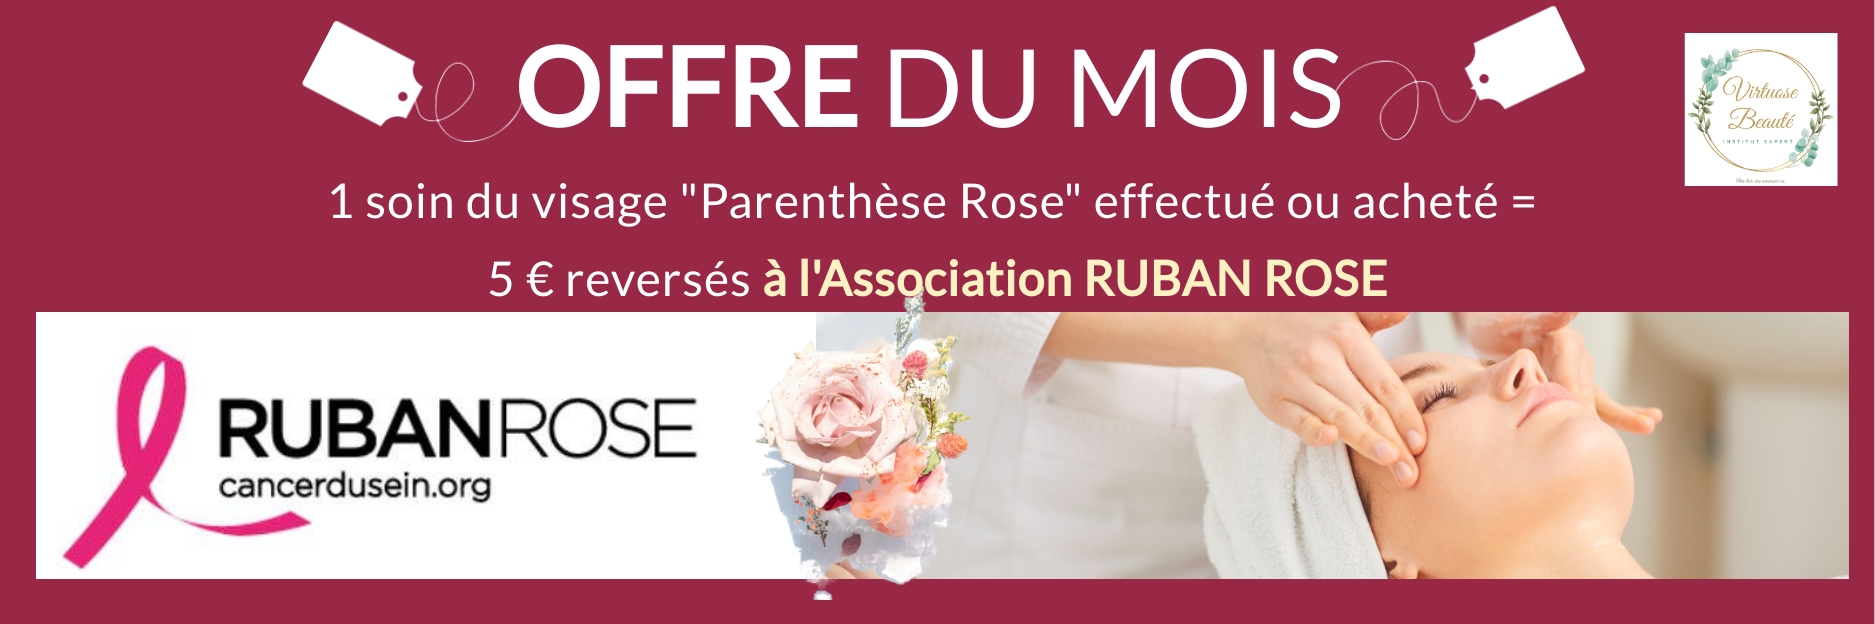 Offre Octobre Rose - Soin Visage "Parenthèse Rose"